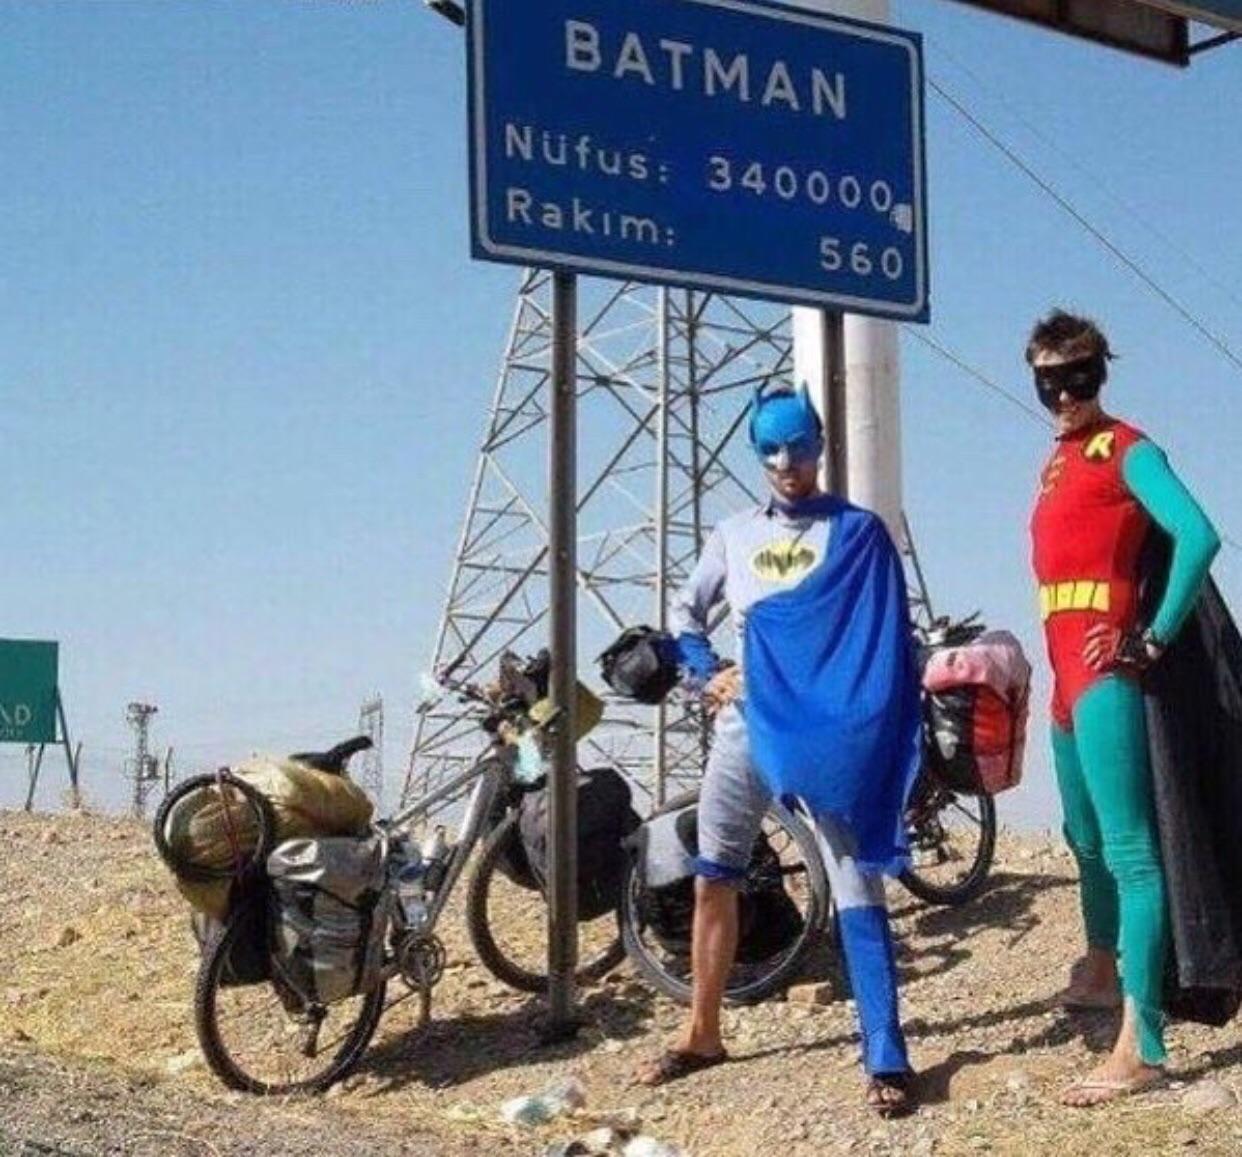 Γιατί υπάρχει πόλη στην Τουρκία που λέγεται Batman;